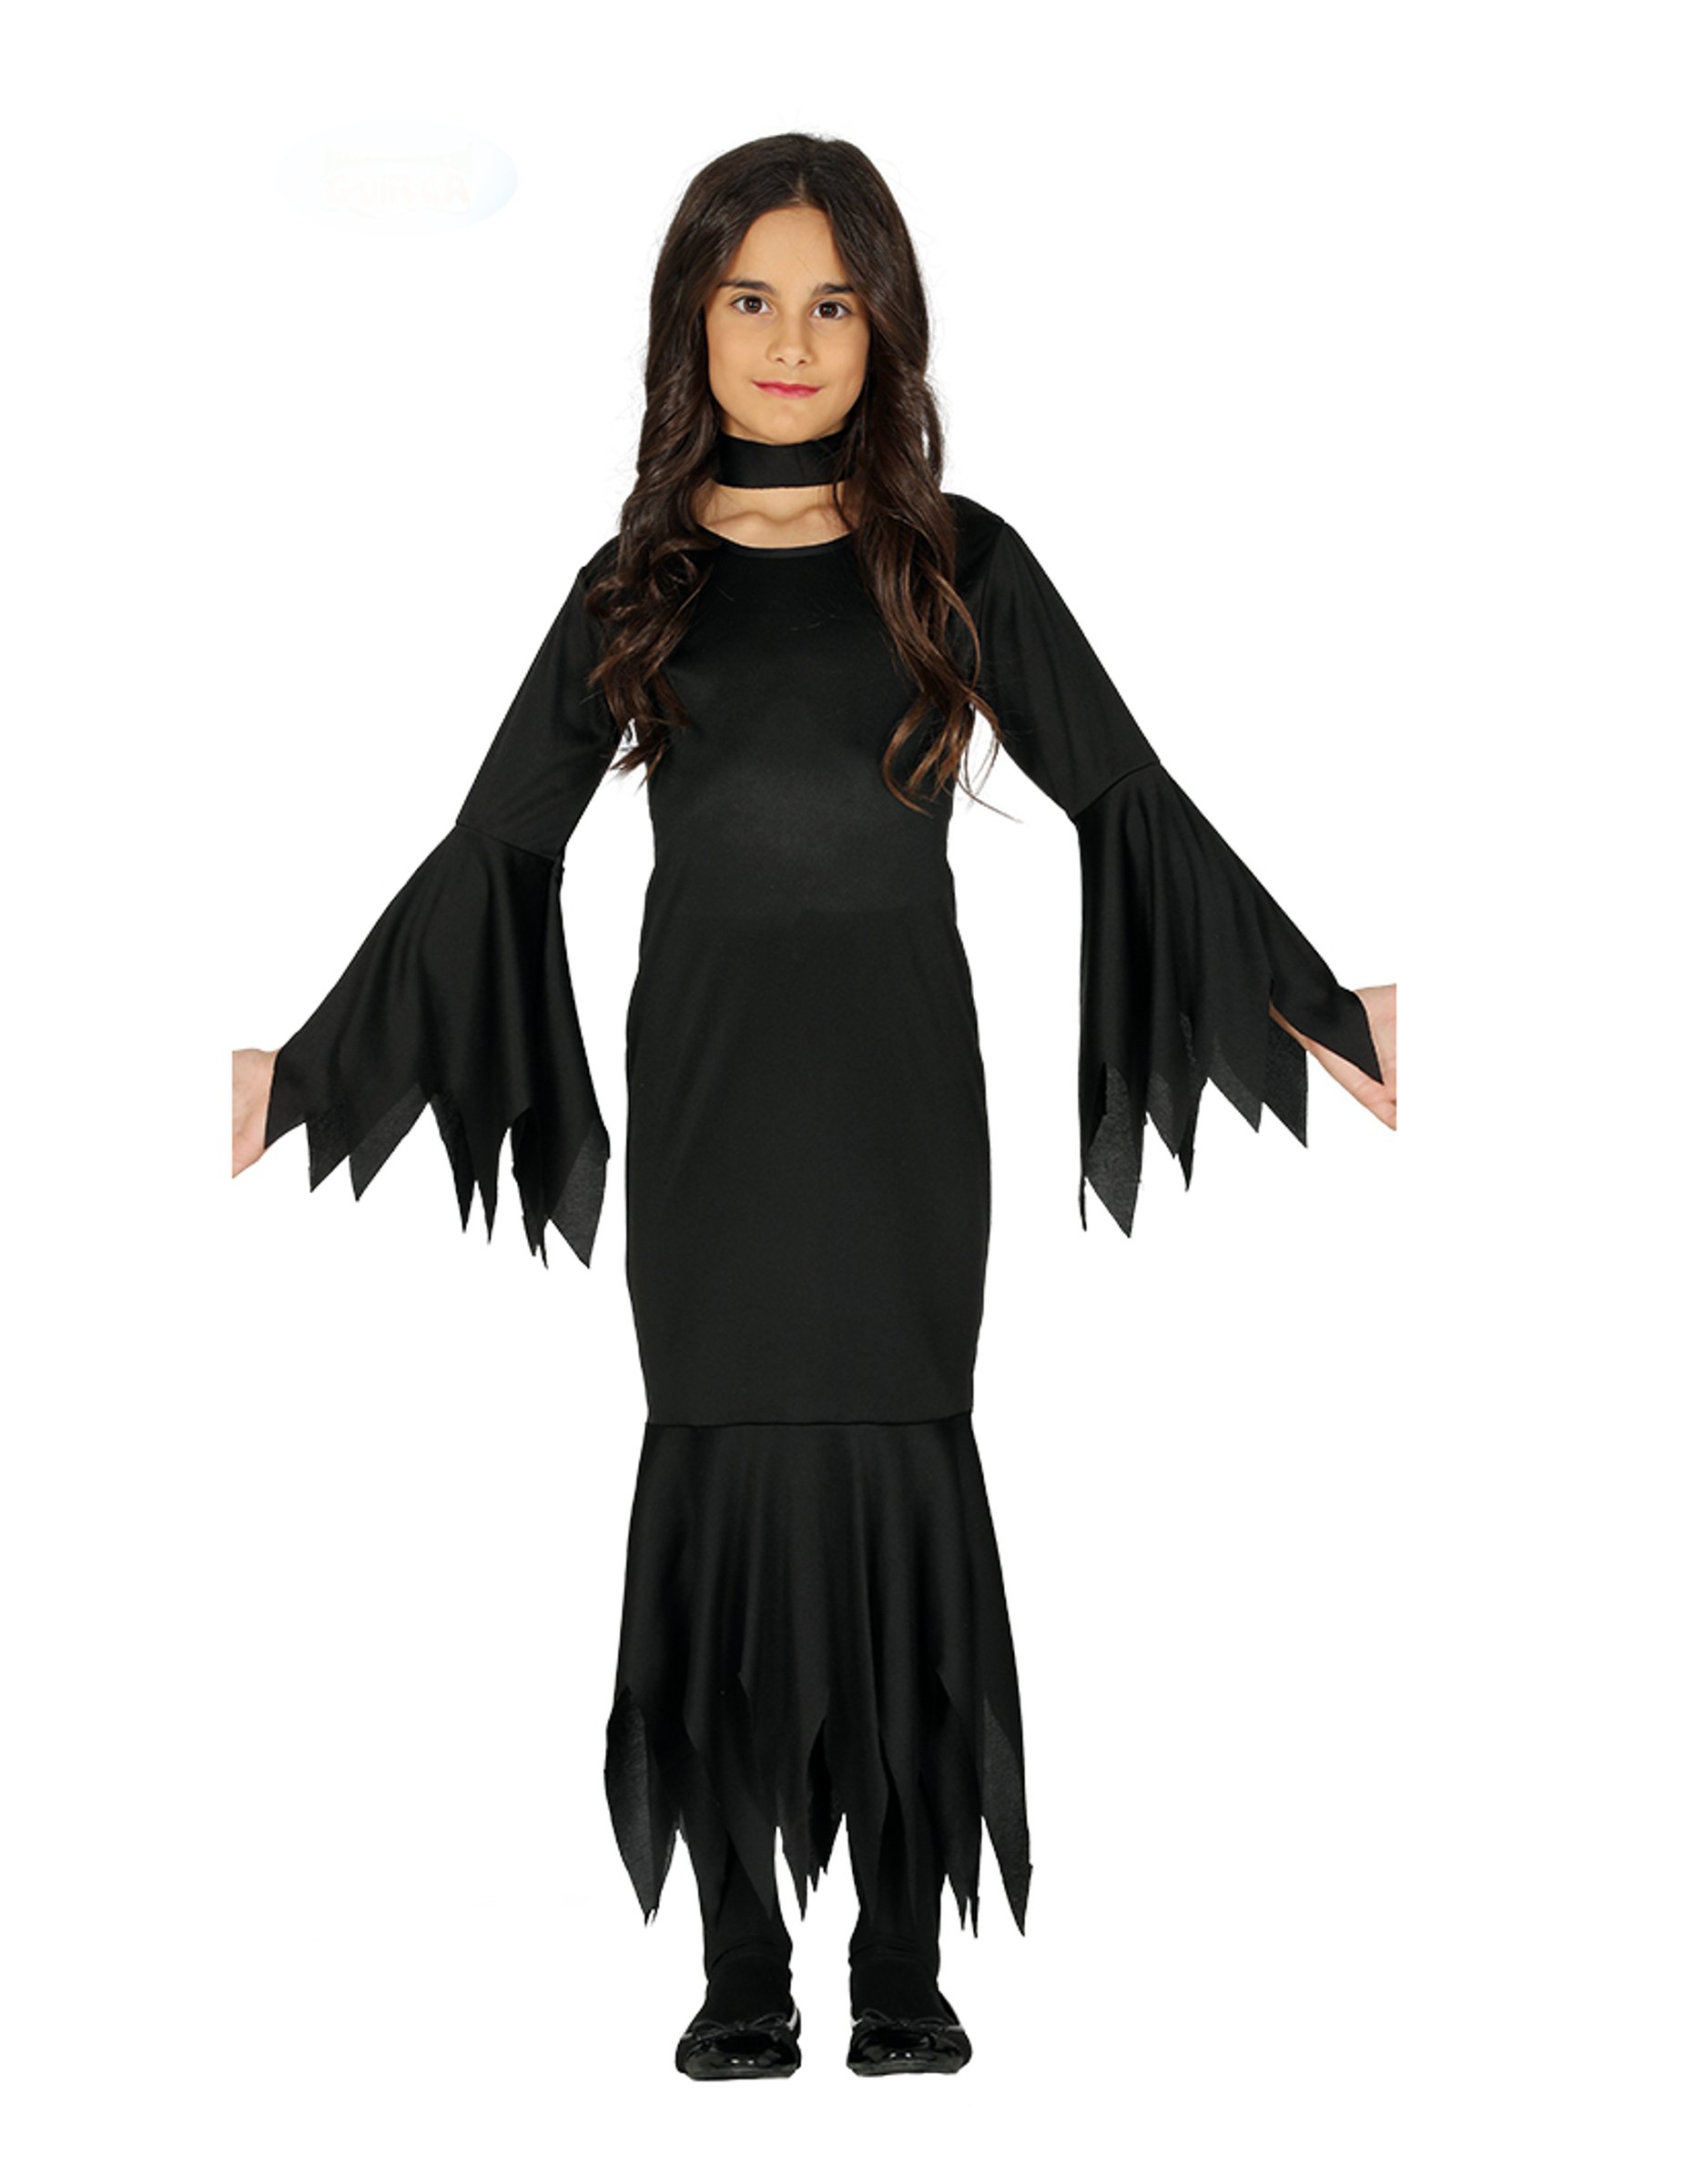 Dunkles Halloween-Kleid für Mädchen Hexen-Kostüm schwarz von FIESTAS GUIRCA, S.L.